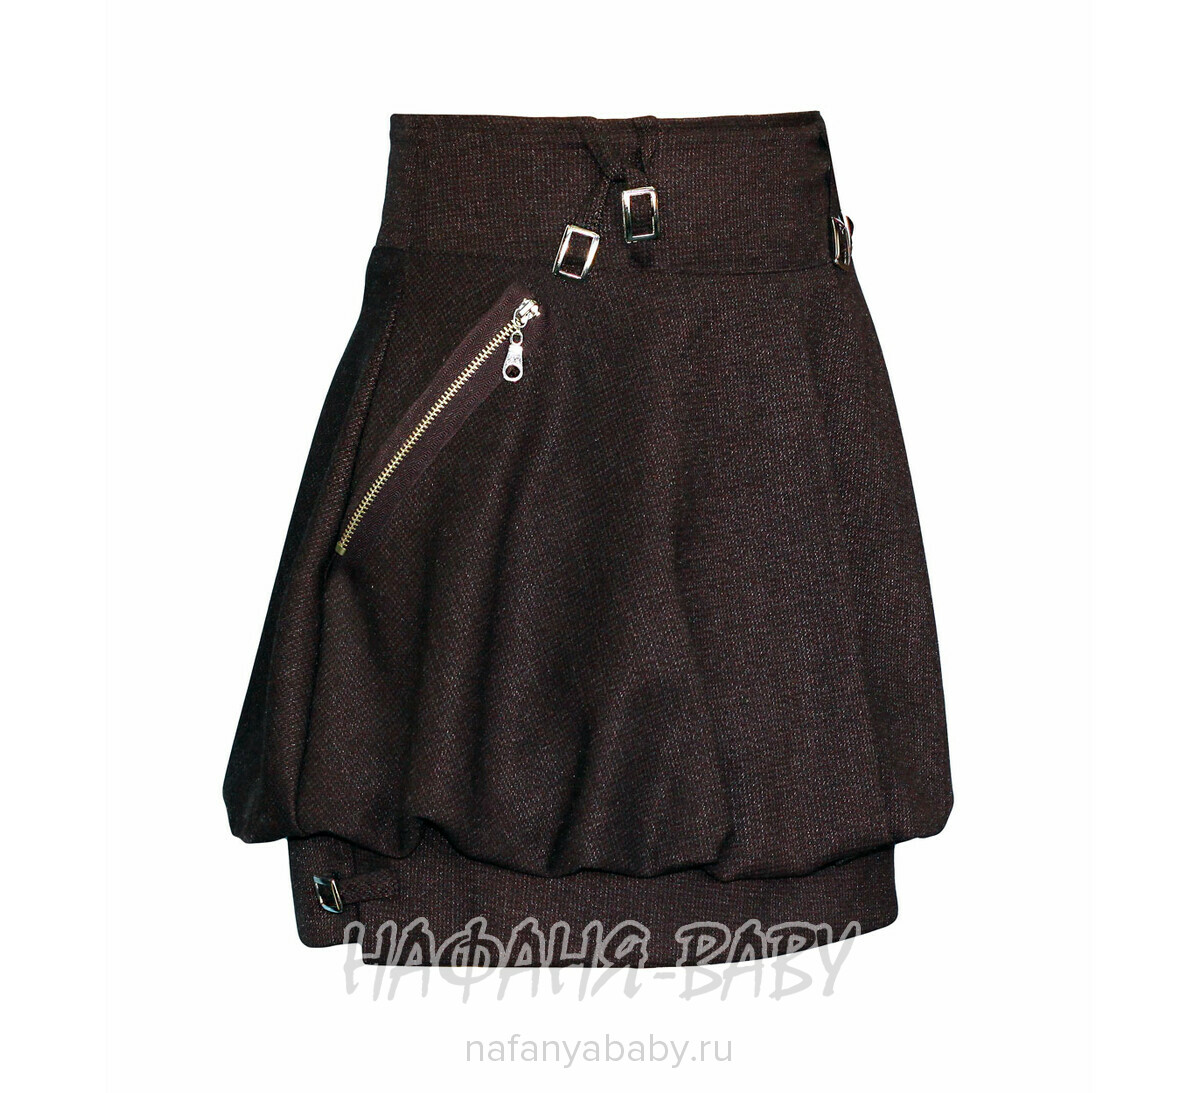 Детская юбка KUNF Kids, купить в интернет магазине Нафаня. арт: 1193.